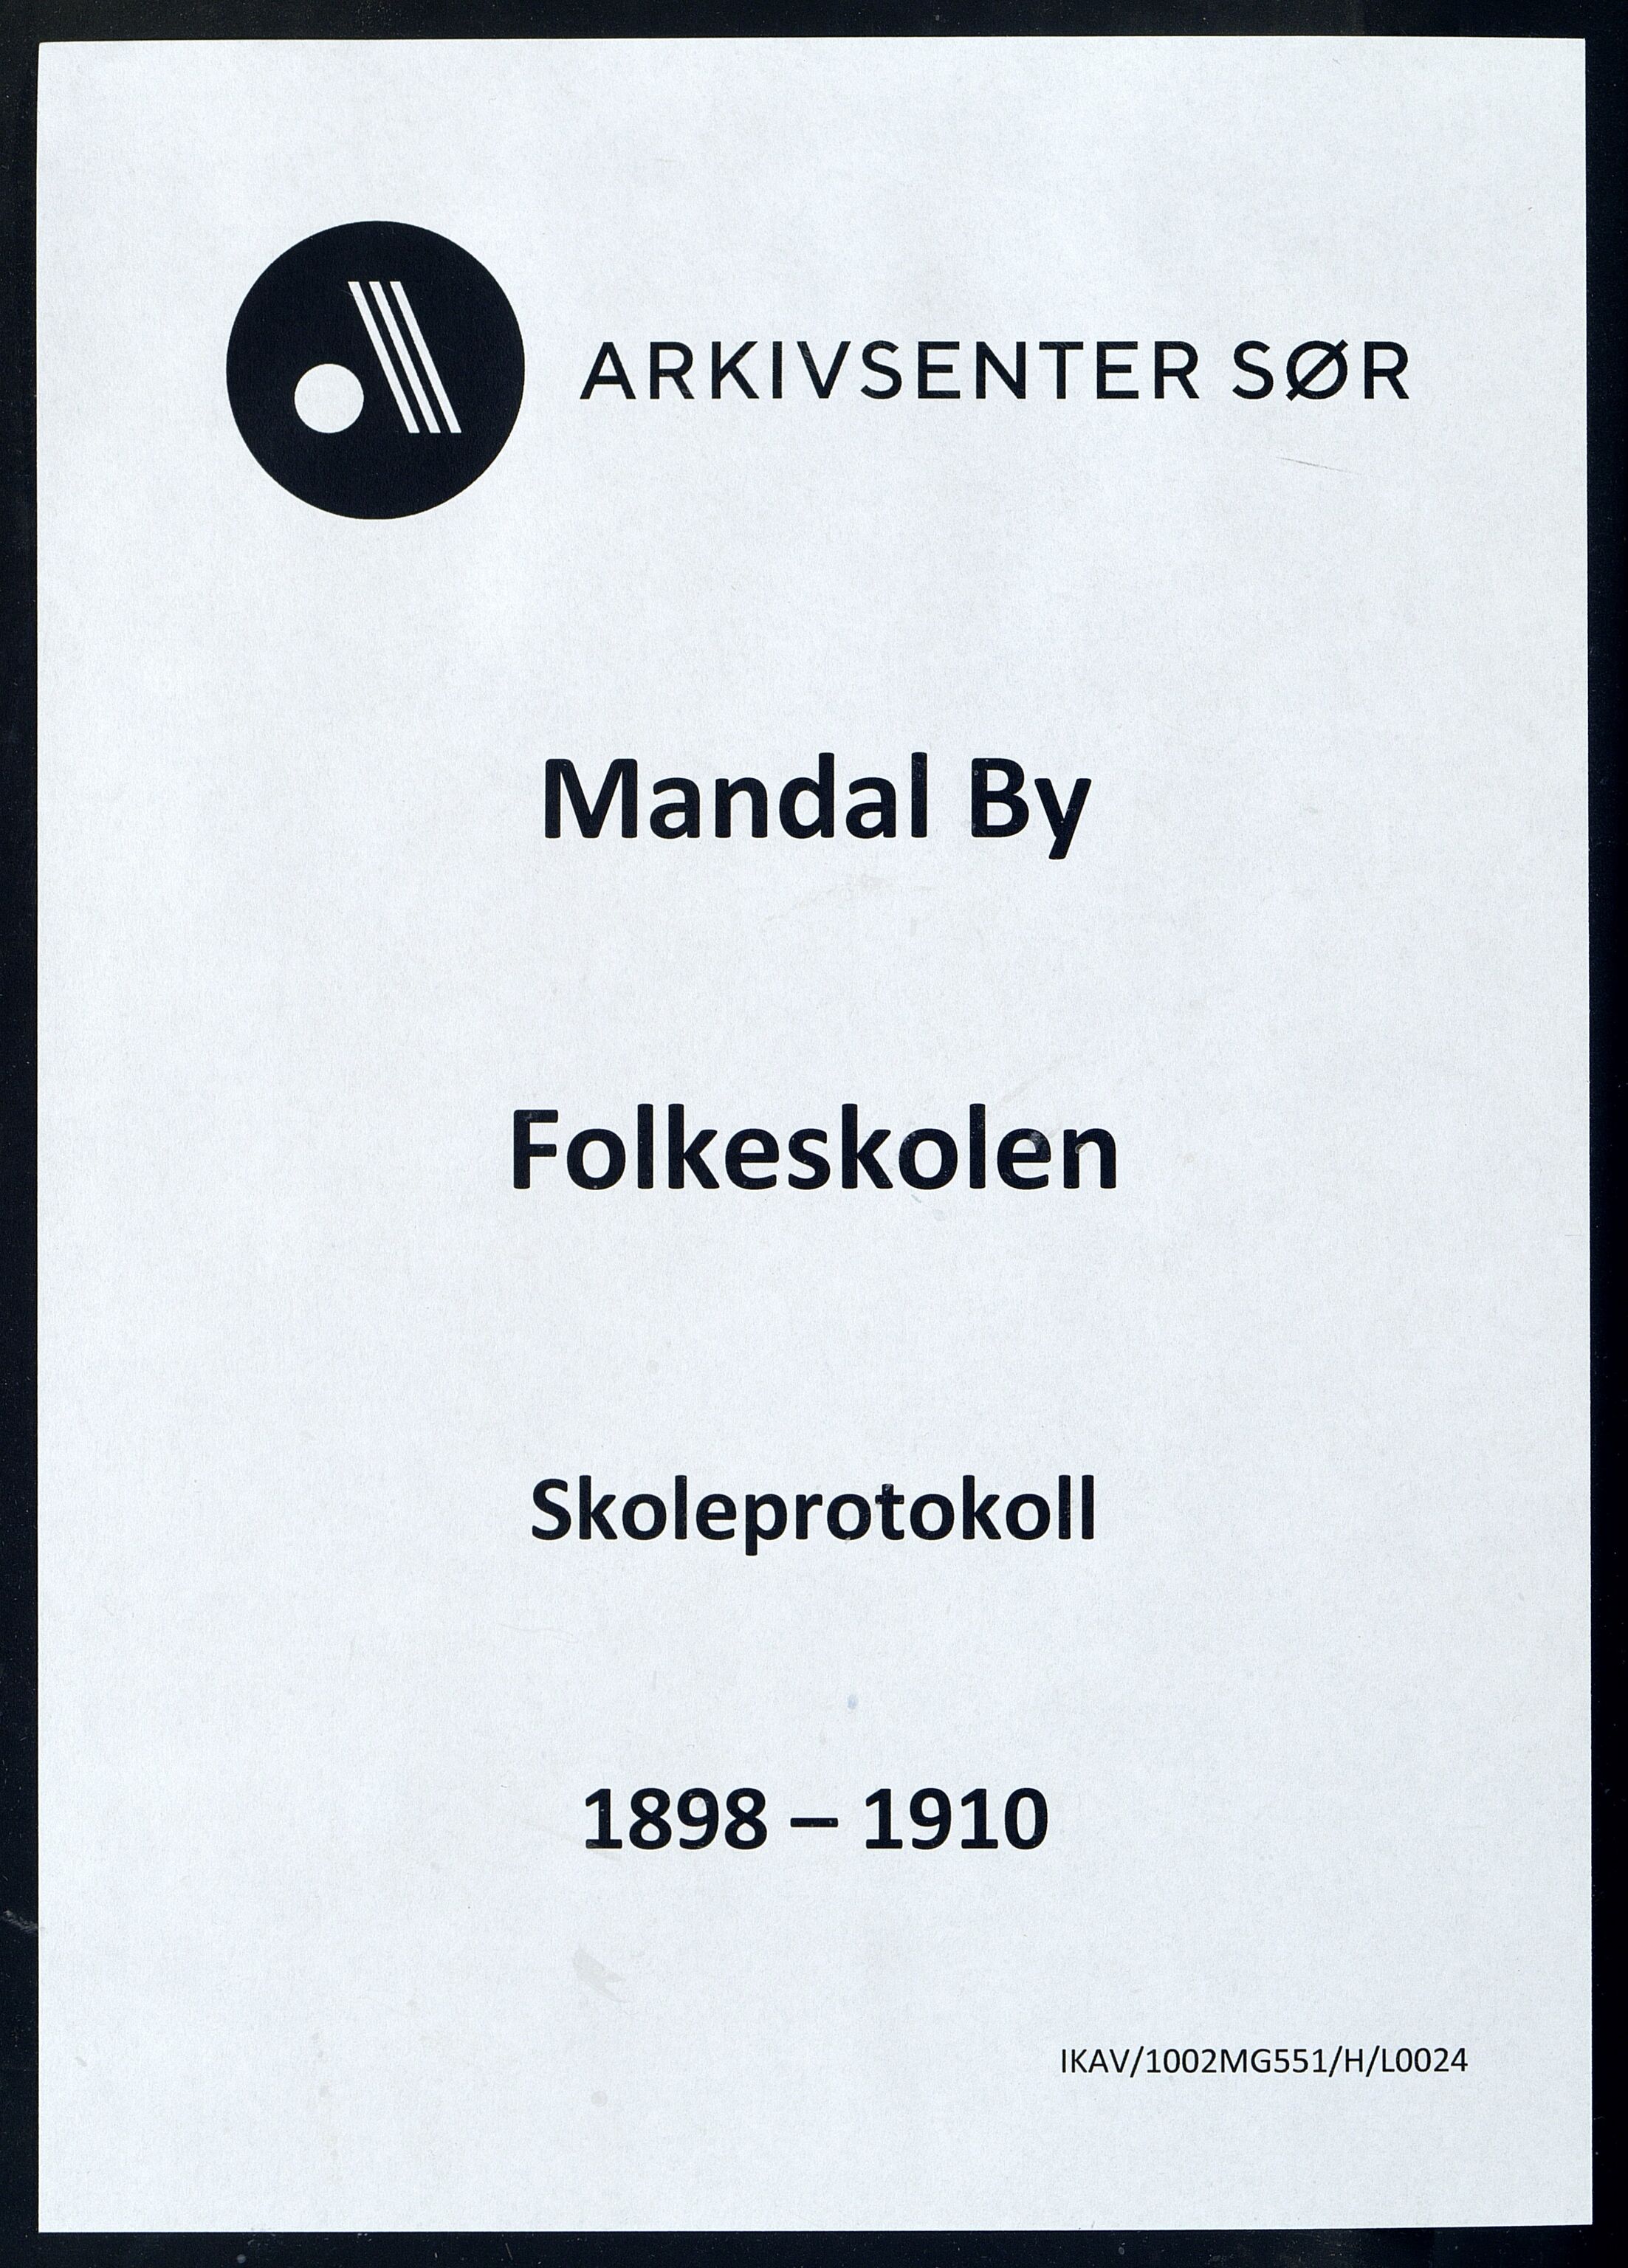 Mandal By - Mandal Allmueskole/Folkeskole/Skole, IKAV/1002MG551/H/L0024: Skoleprotokoll, 1898-1910